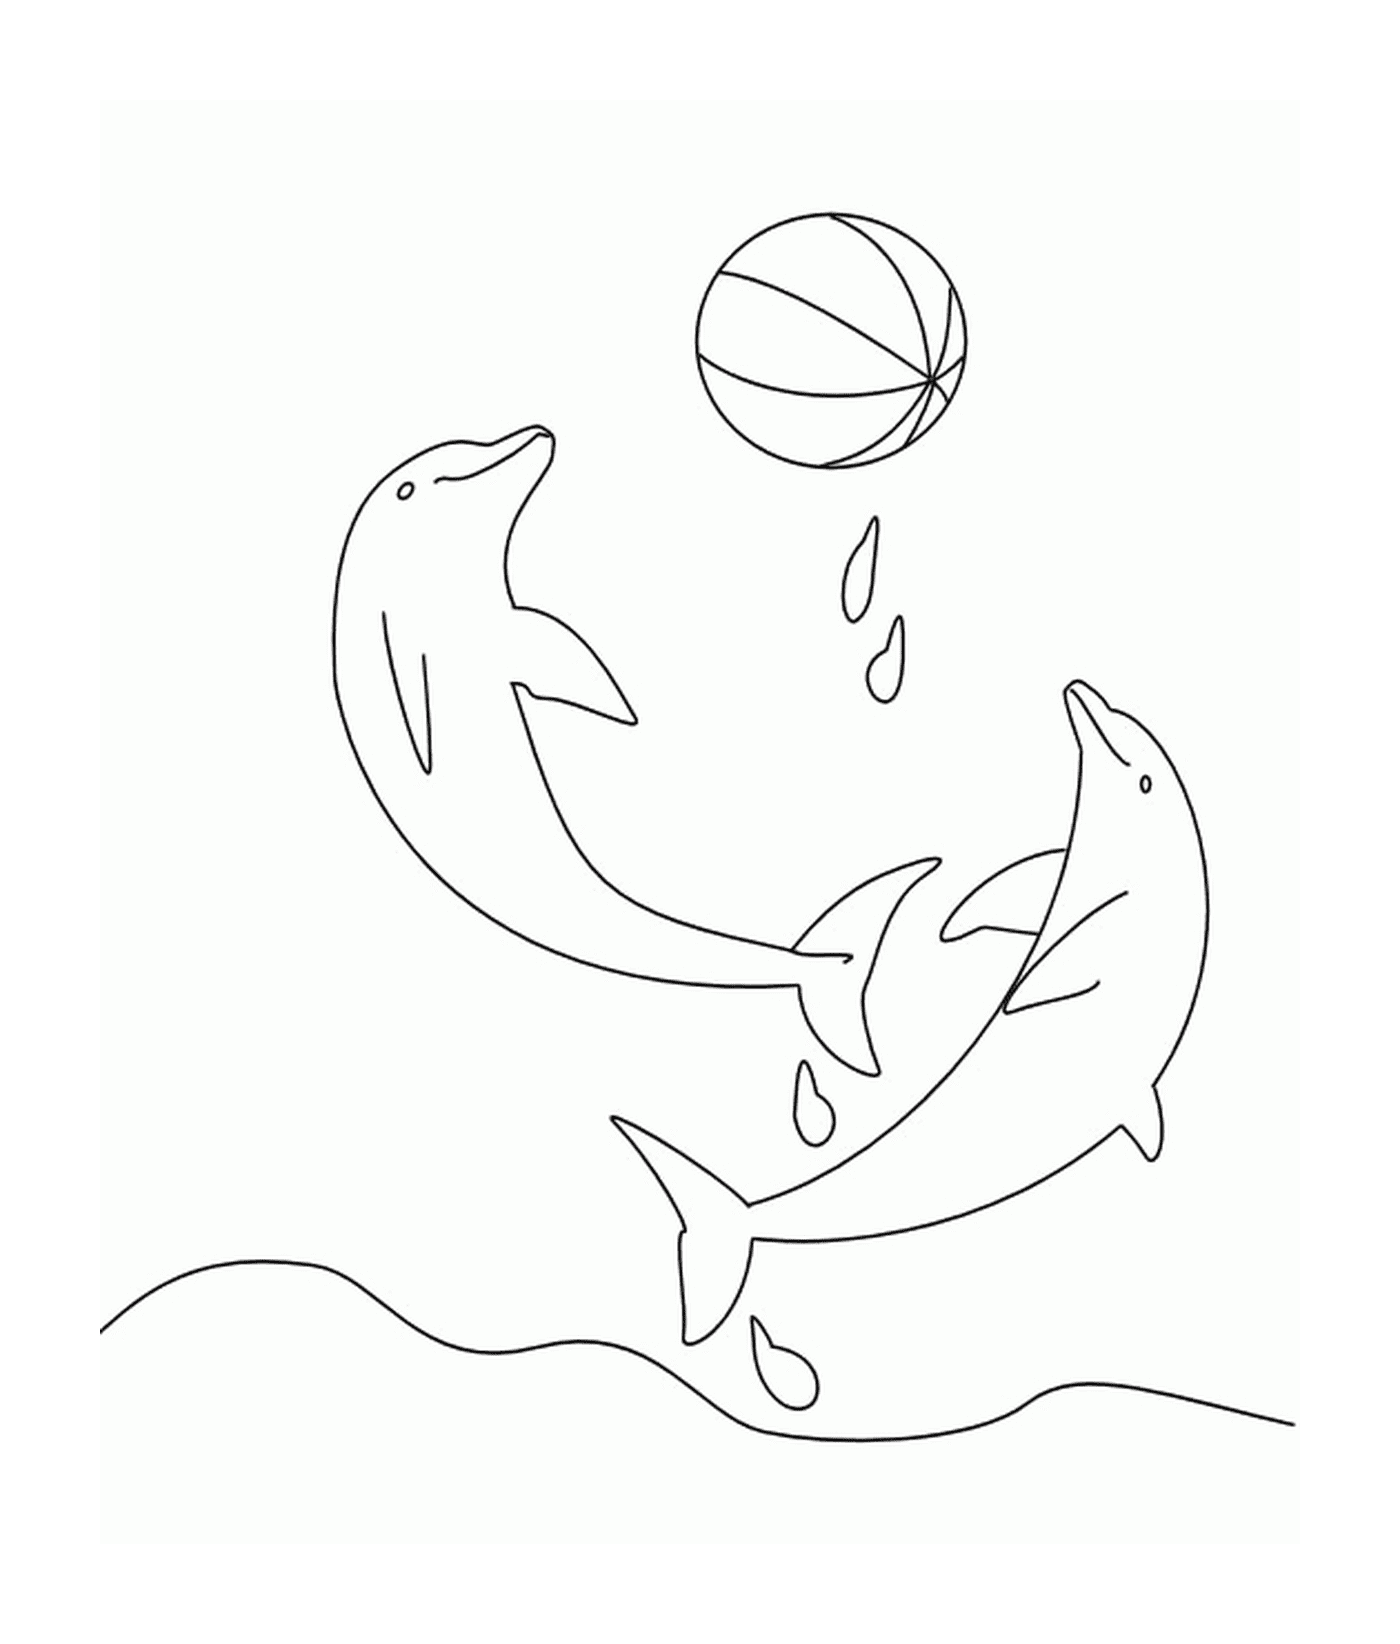  Два дельфина играют с шариком 